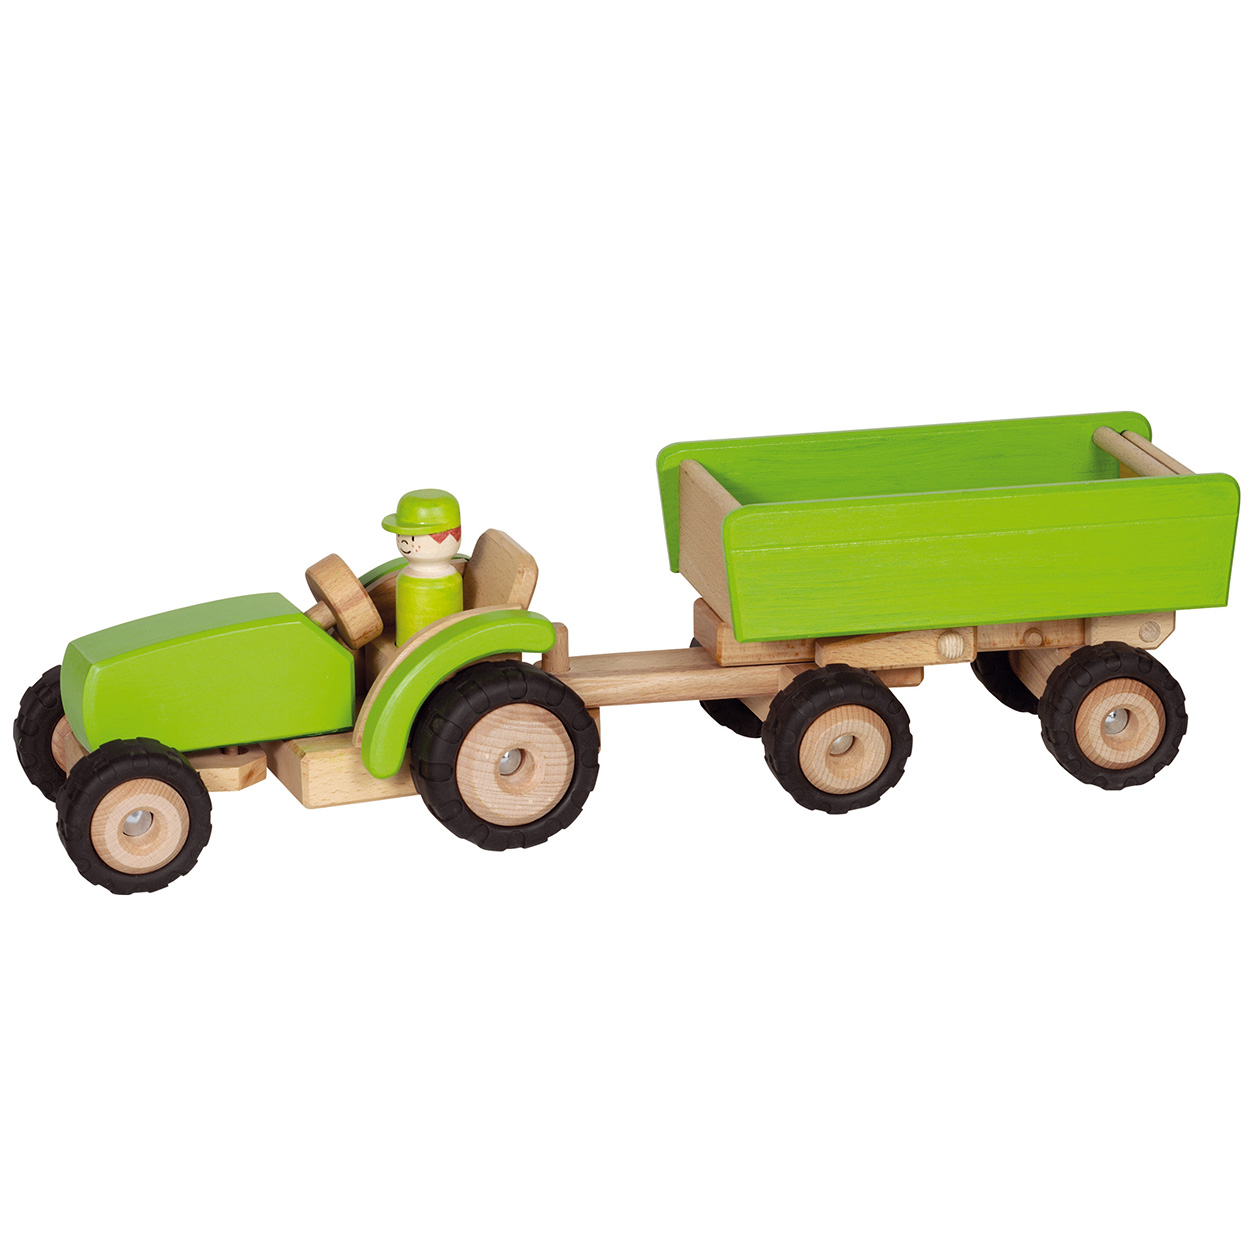 Tracteur en bois Goki vert avec remorque